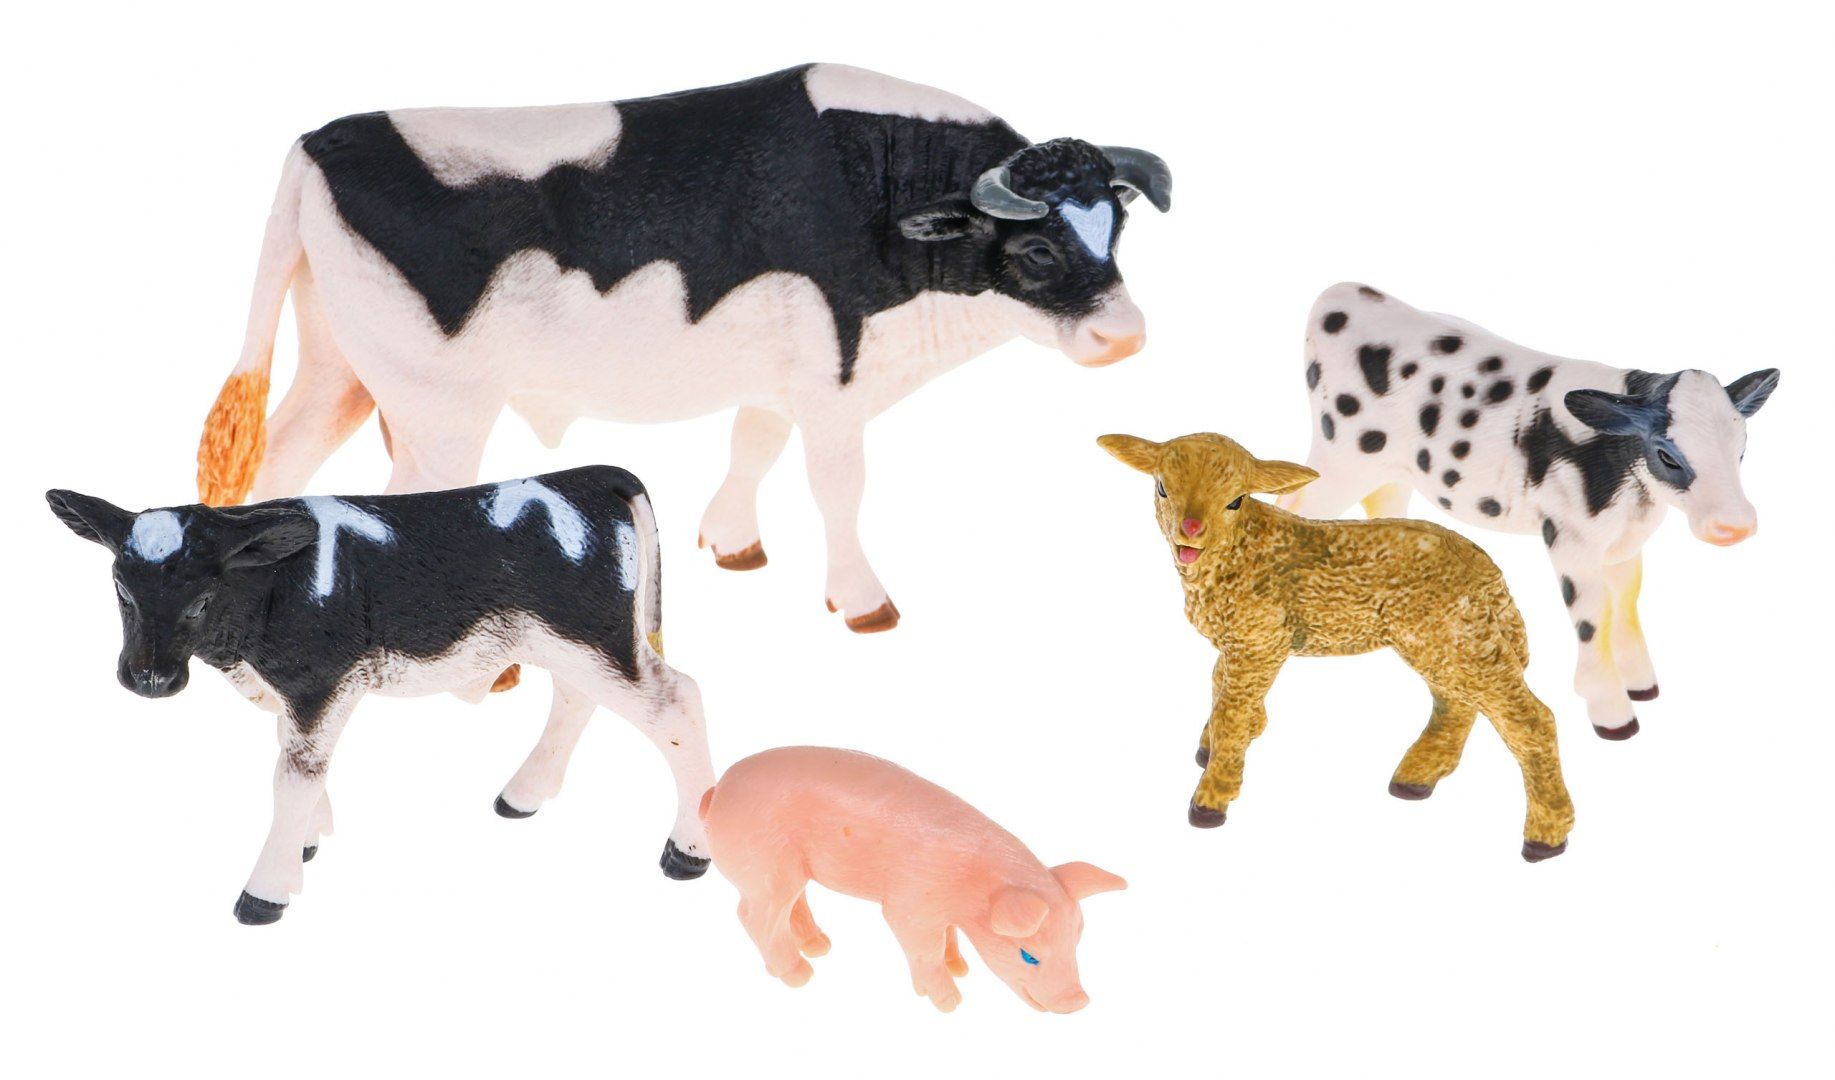 Zestaw farma z figurkami i akcesoriami Rolnicy + zwierzęta + sprzęt